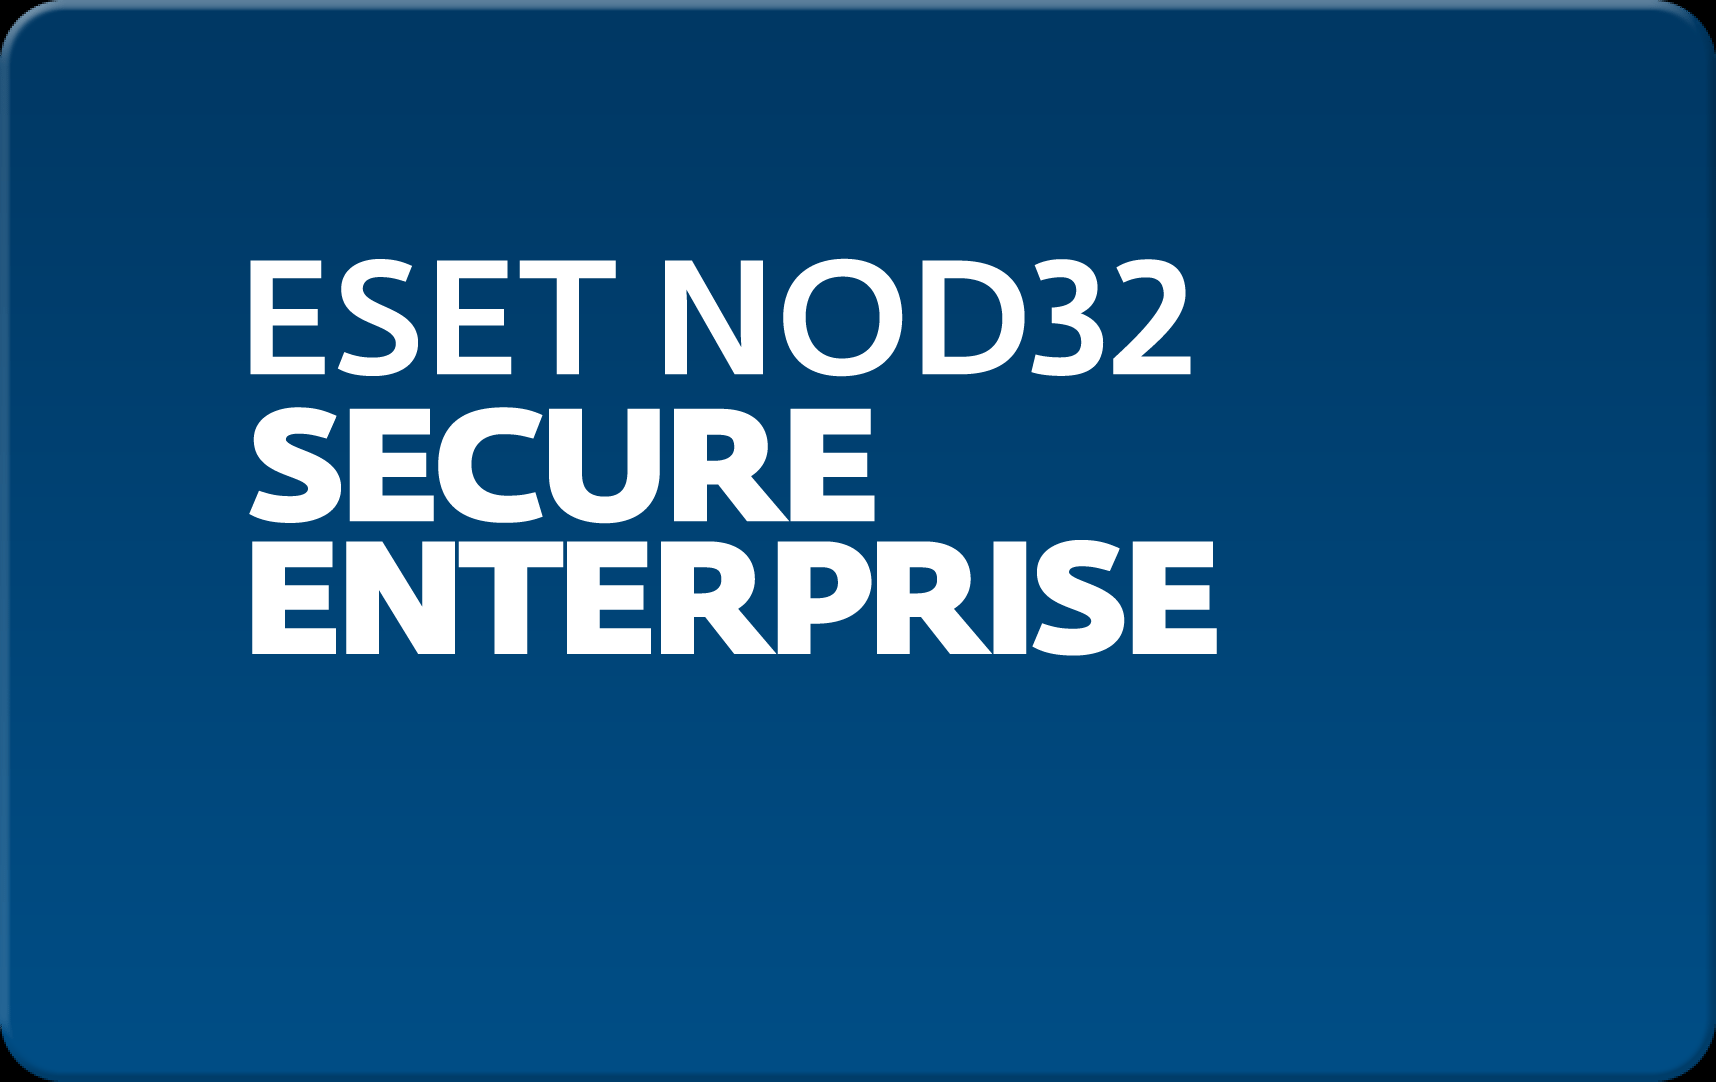        Eset NOD32 Secure Enterprise  167  NOD32-ESE-NS-1-167  #1